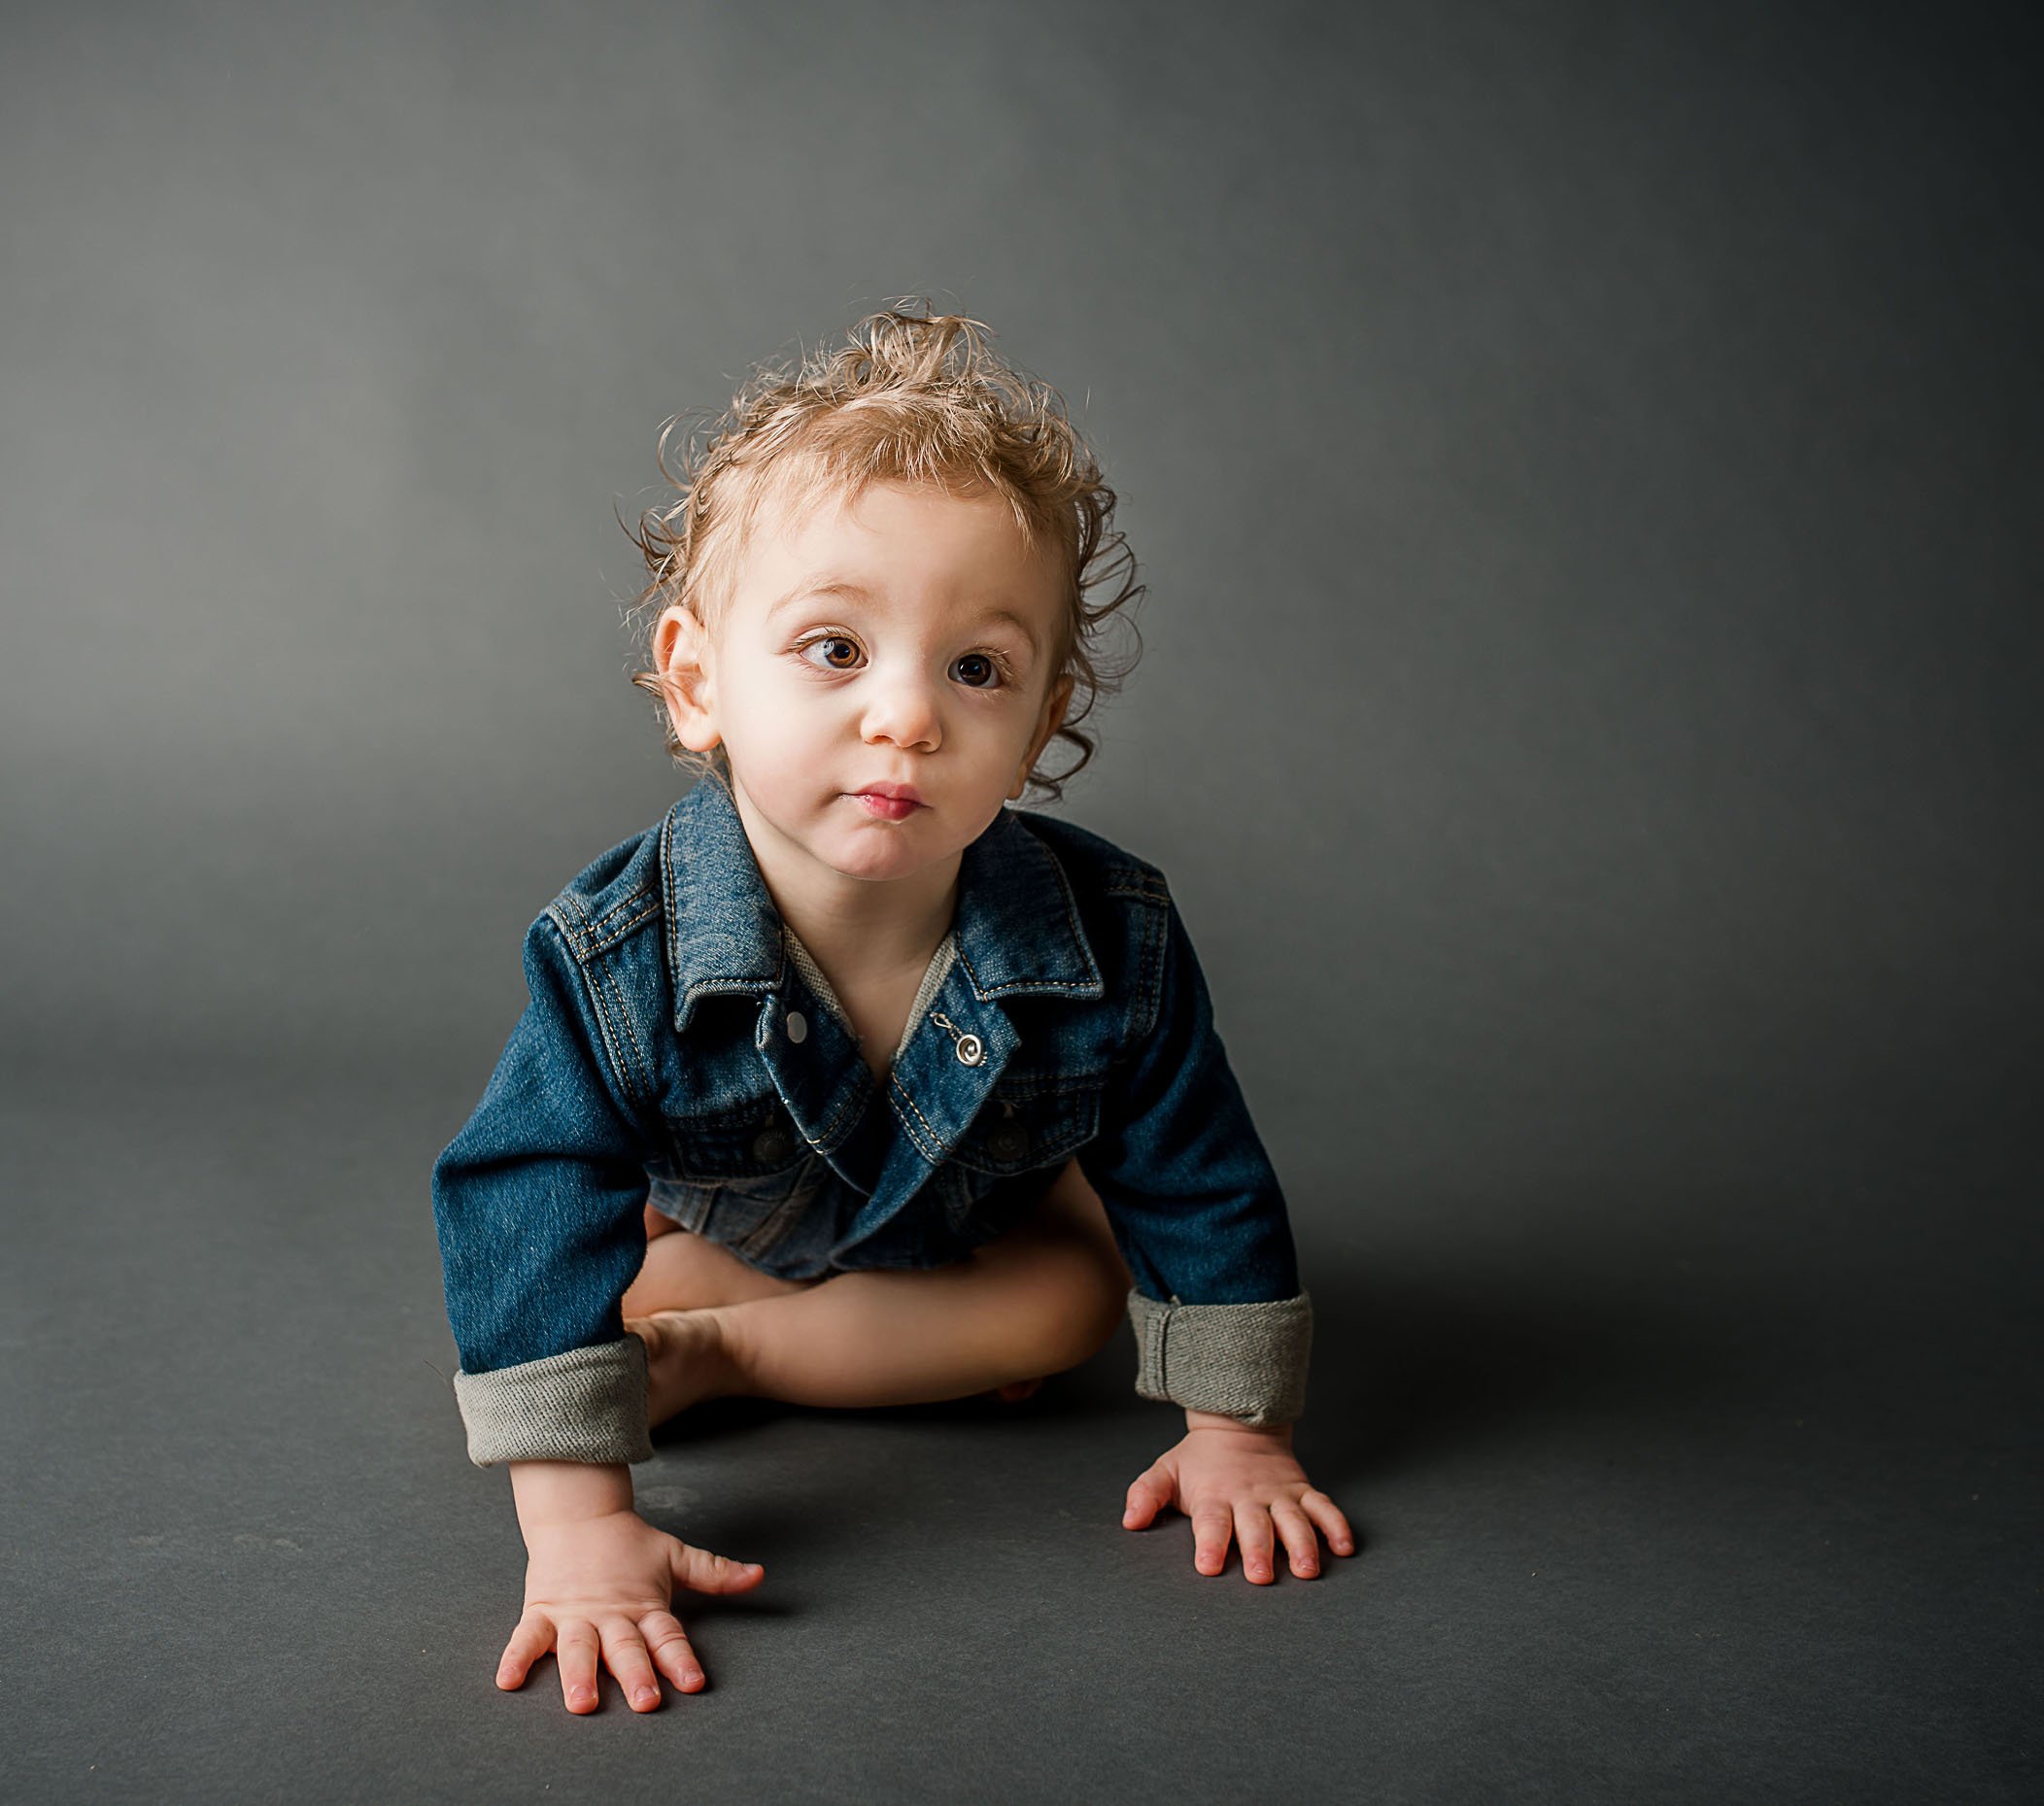 18 month old boy crawling on grey in a denim jacket One Big Happy Photo